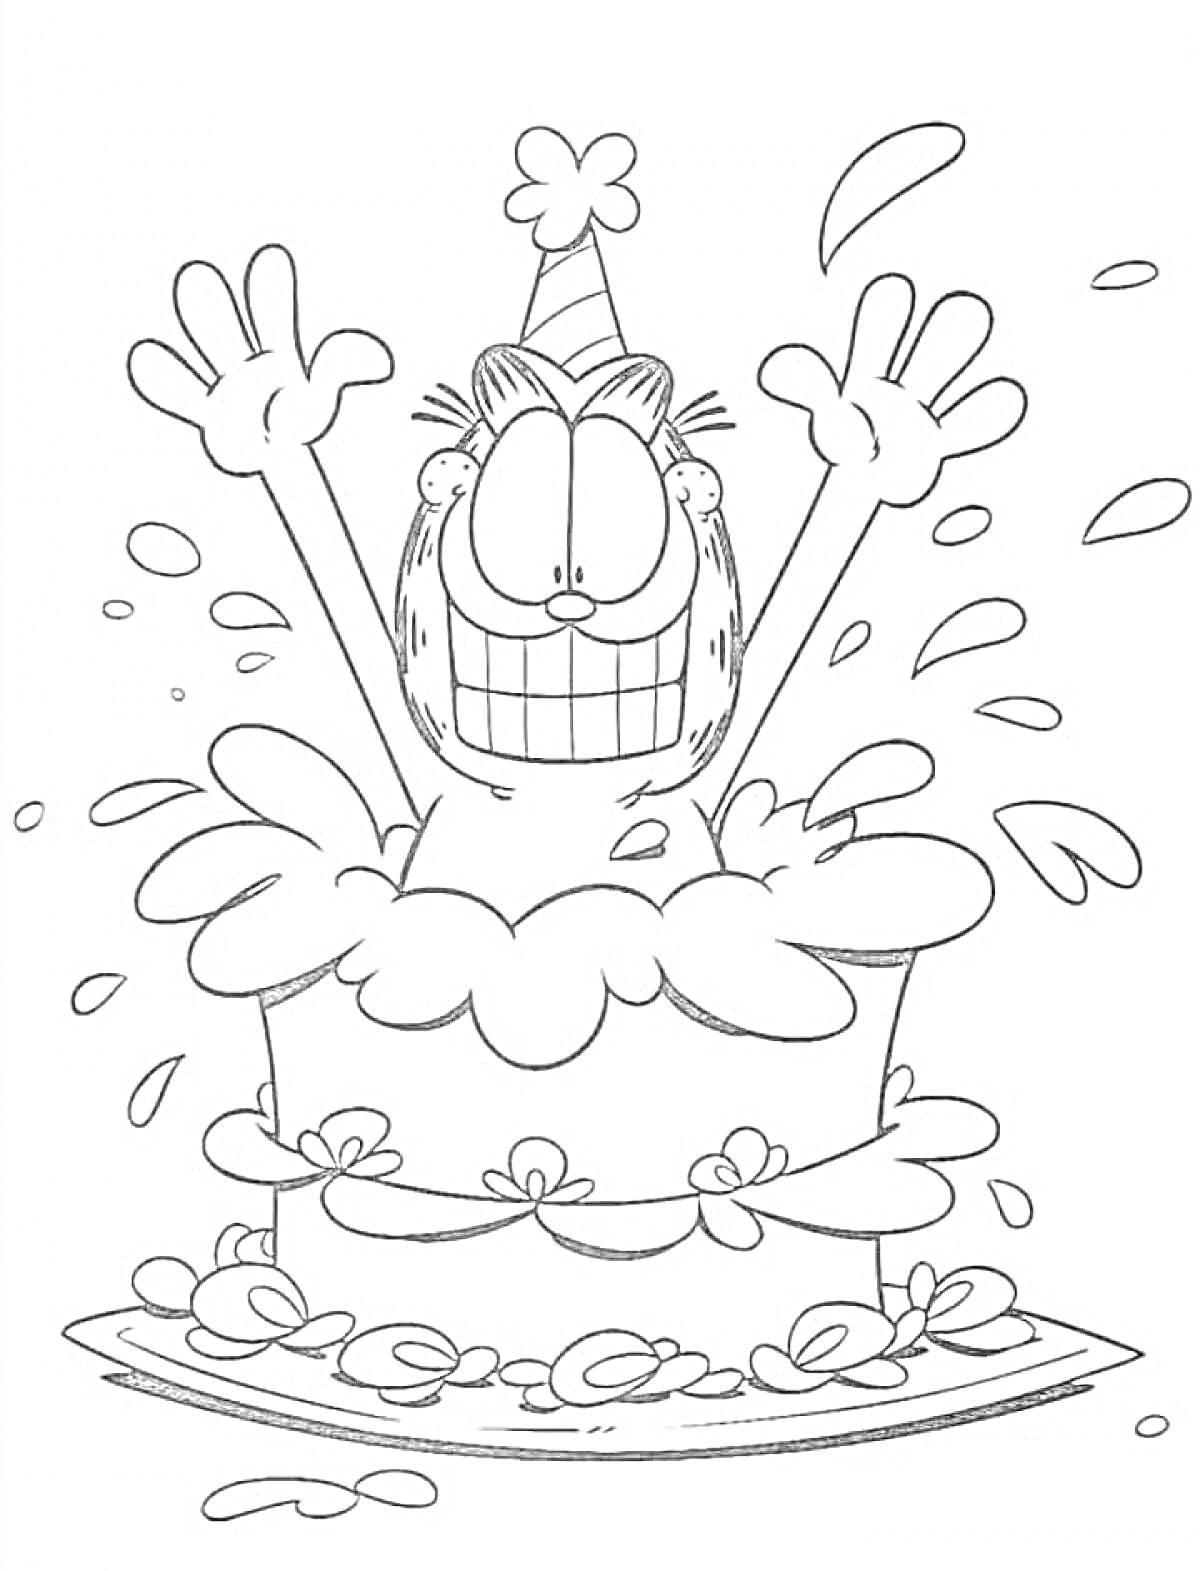 Раскраска Кот в праздничной шляпе выскакивает из праздничного торта с радостным выражением лица.